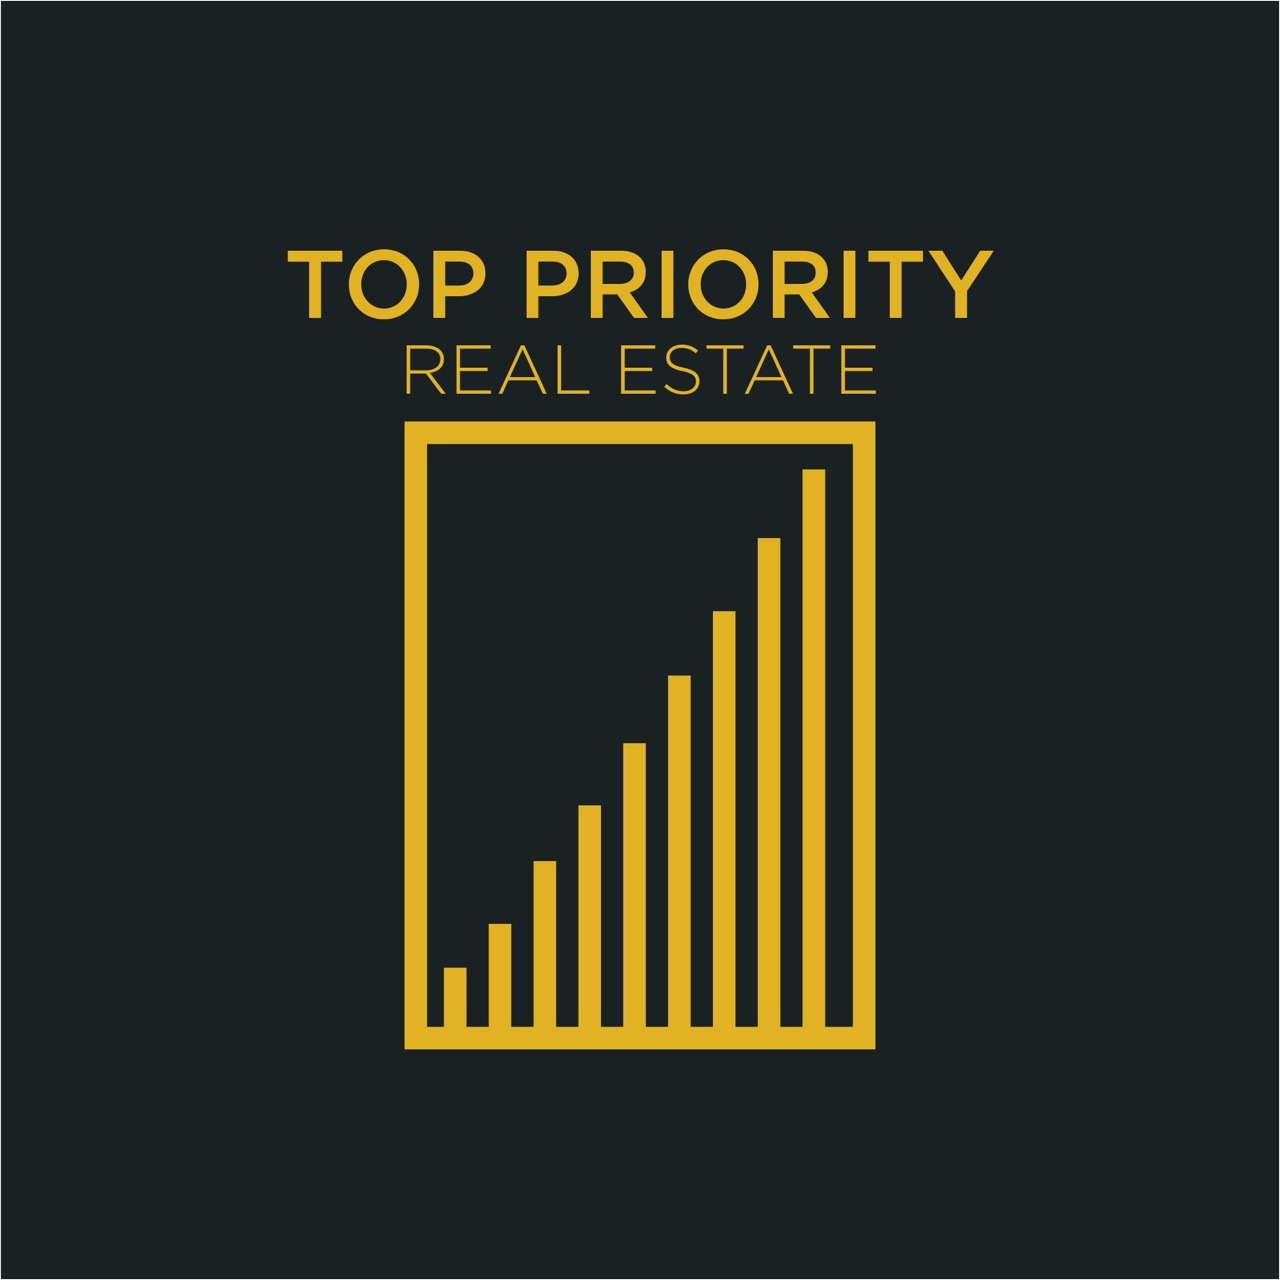 Top Priority Real Estate